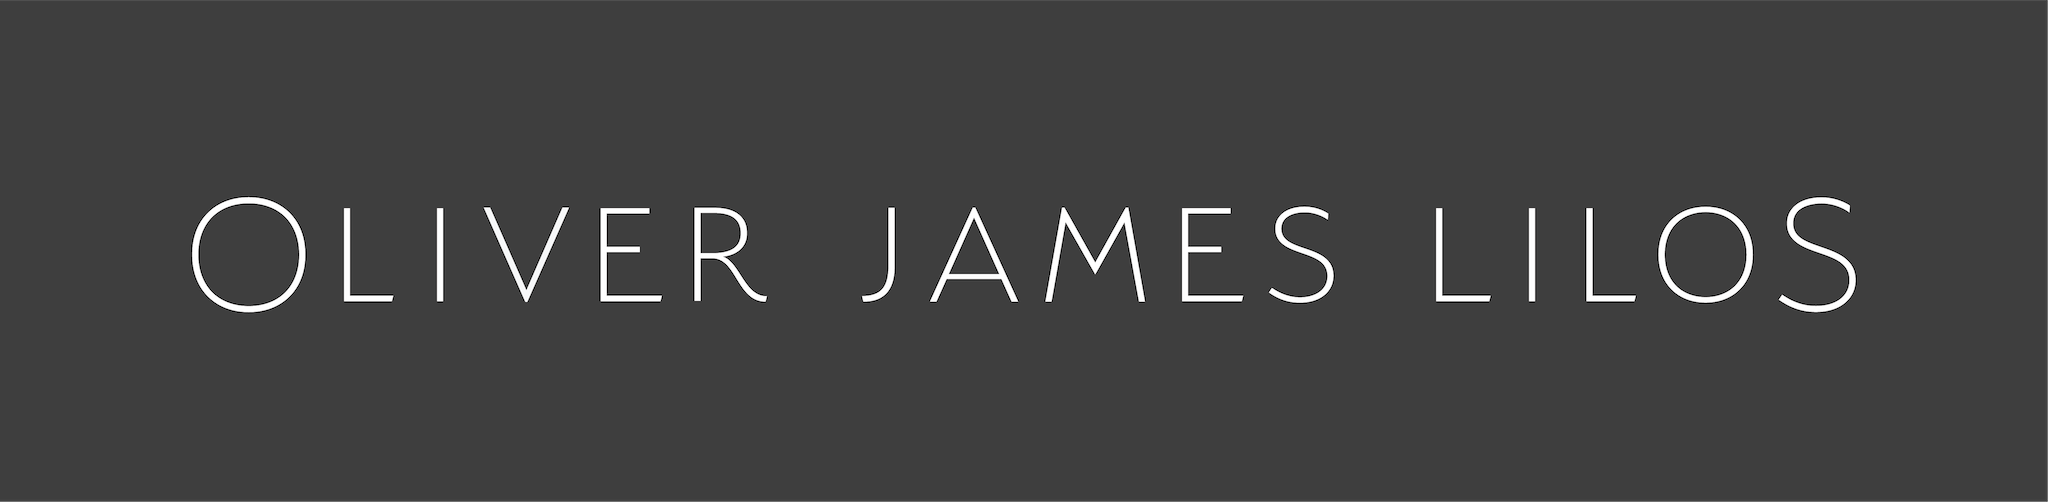 Le logo d'Oliver James Lilos en noir et blanc.